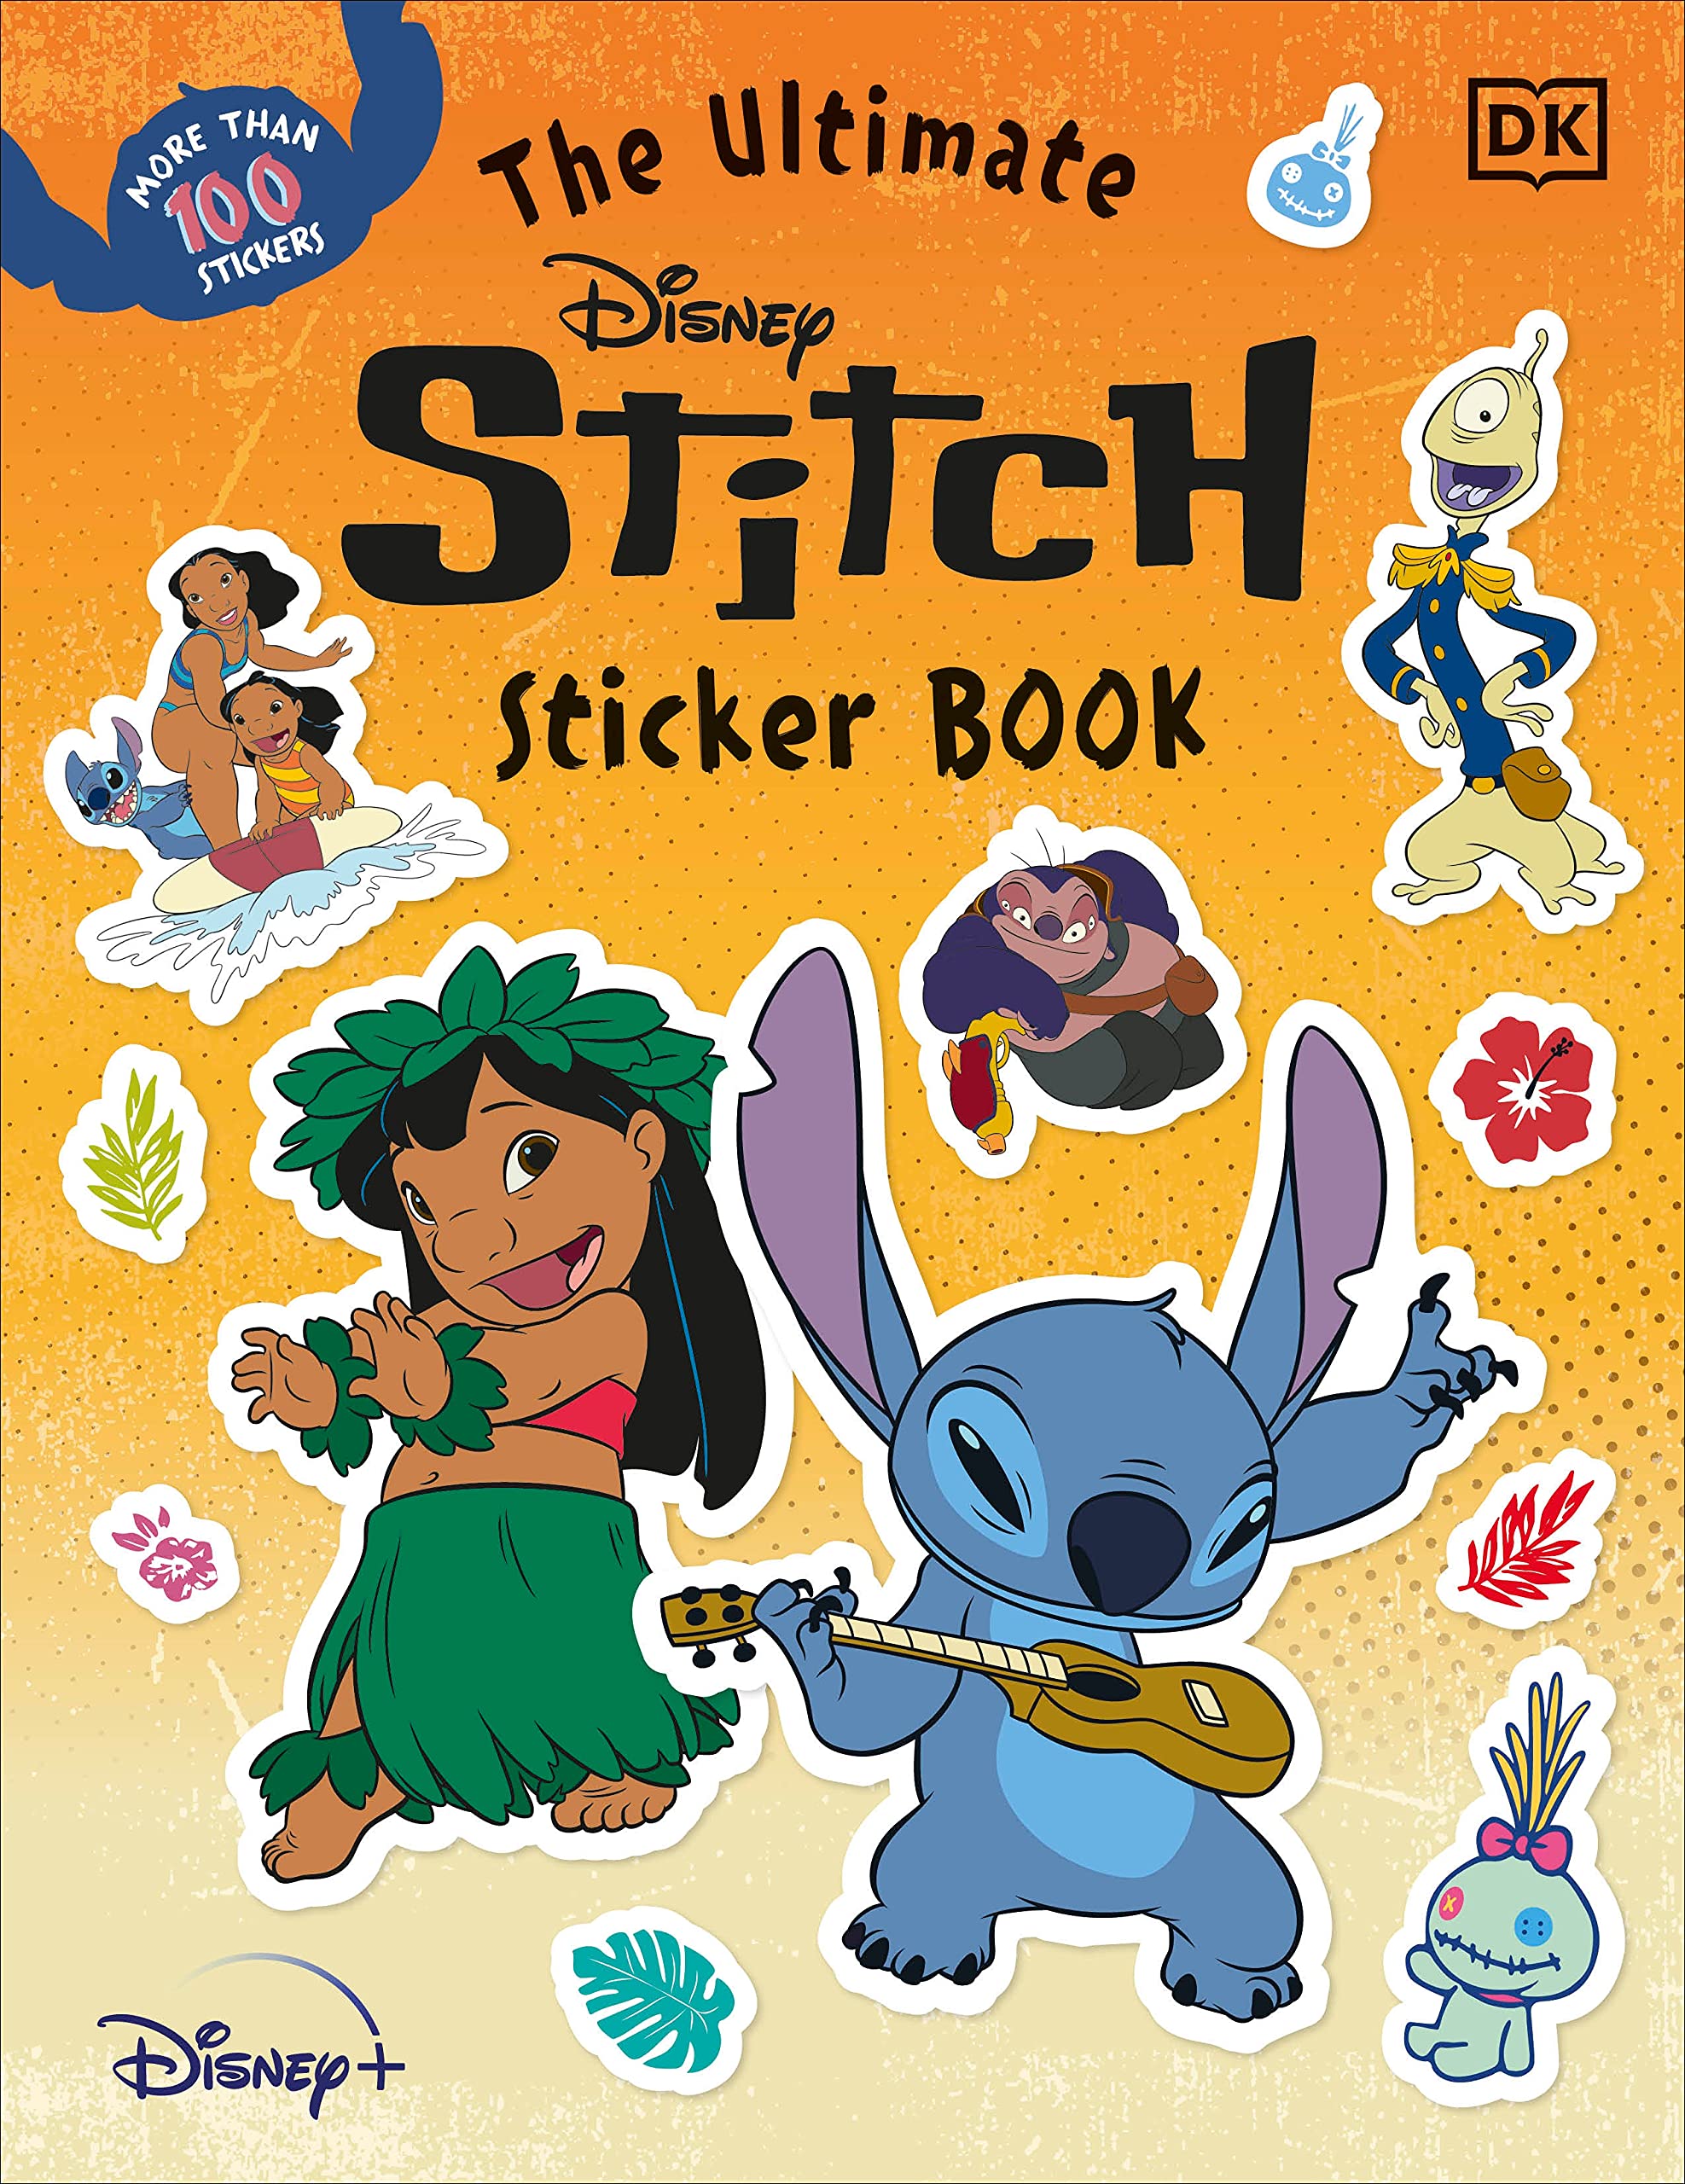 The Ultimate Disney Stitch Sticker Book by DK - Ultimate Sticker Book ...